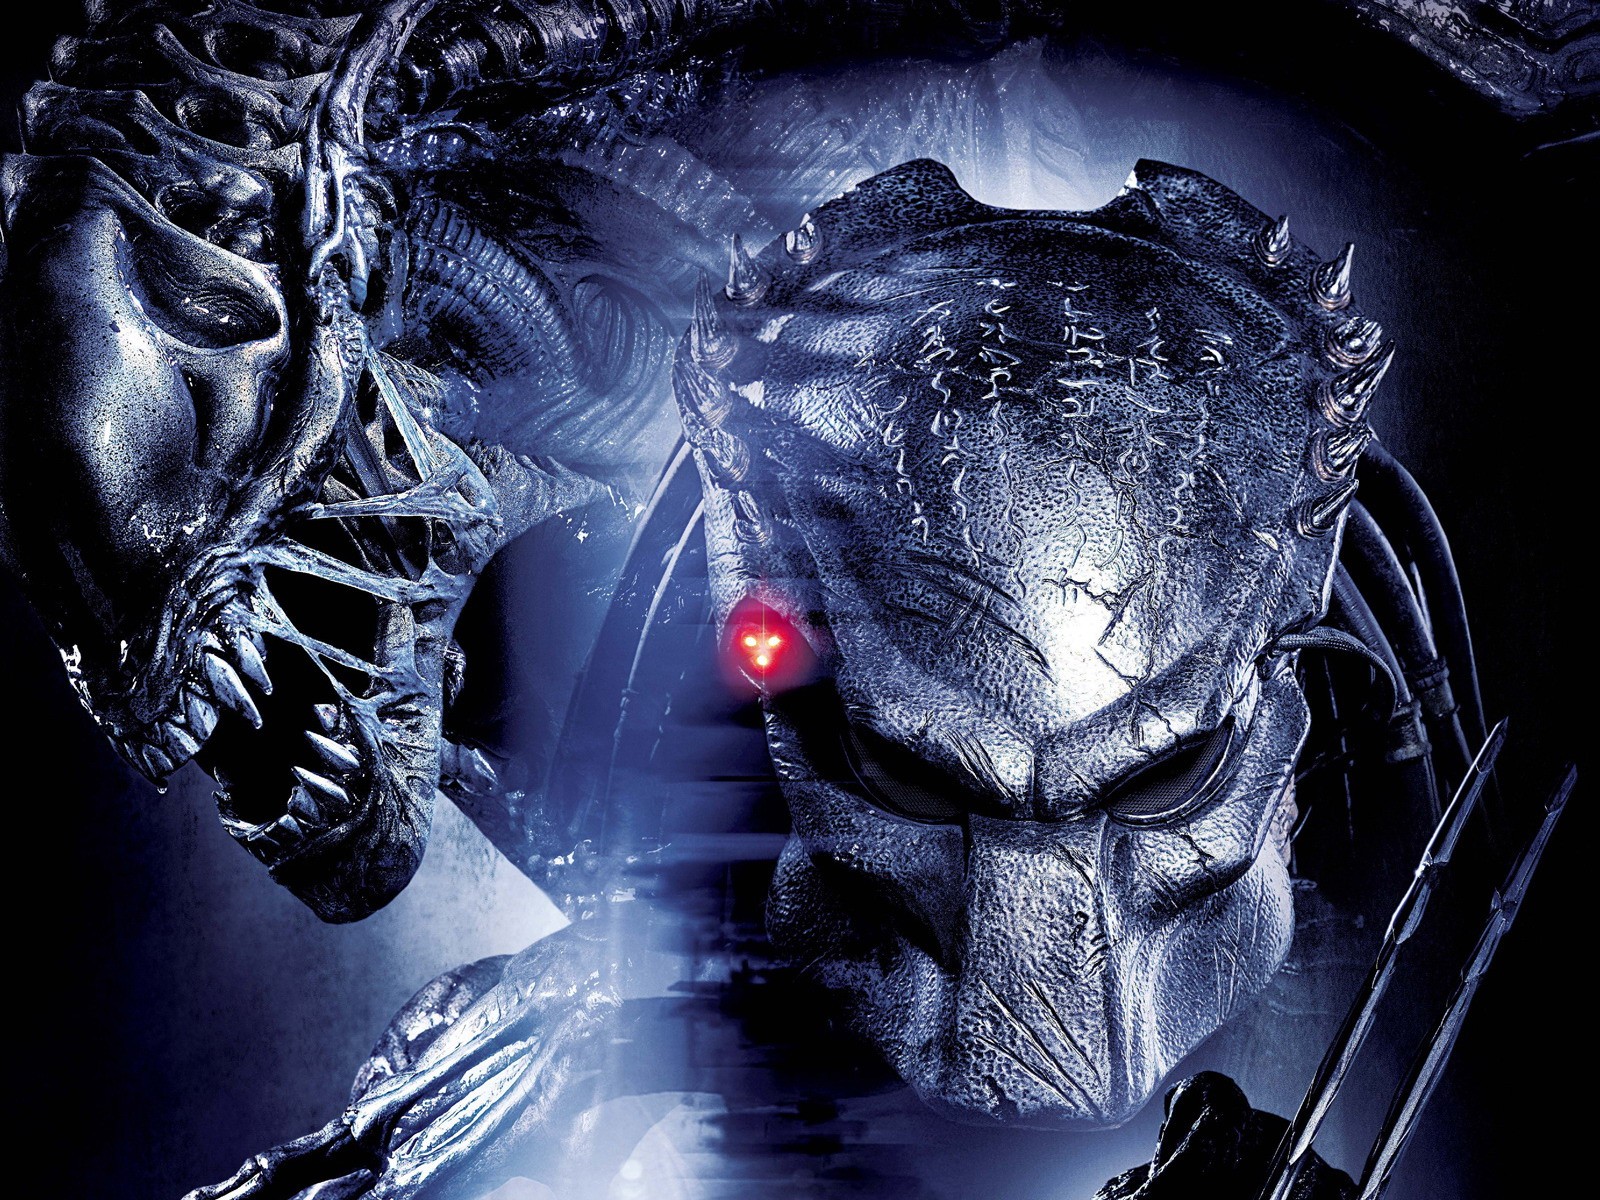 Descargar las imágenes de Aliens Vs Predator 2 gratis para teléfonos  Android y iPhone, fondos de pantalla de Aliens Vs Predator 2 para teléfonos  móviles